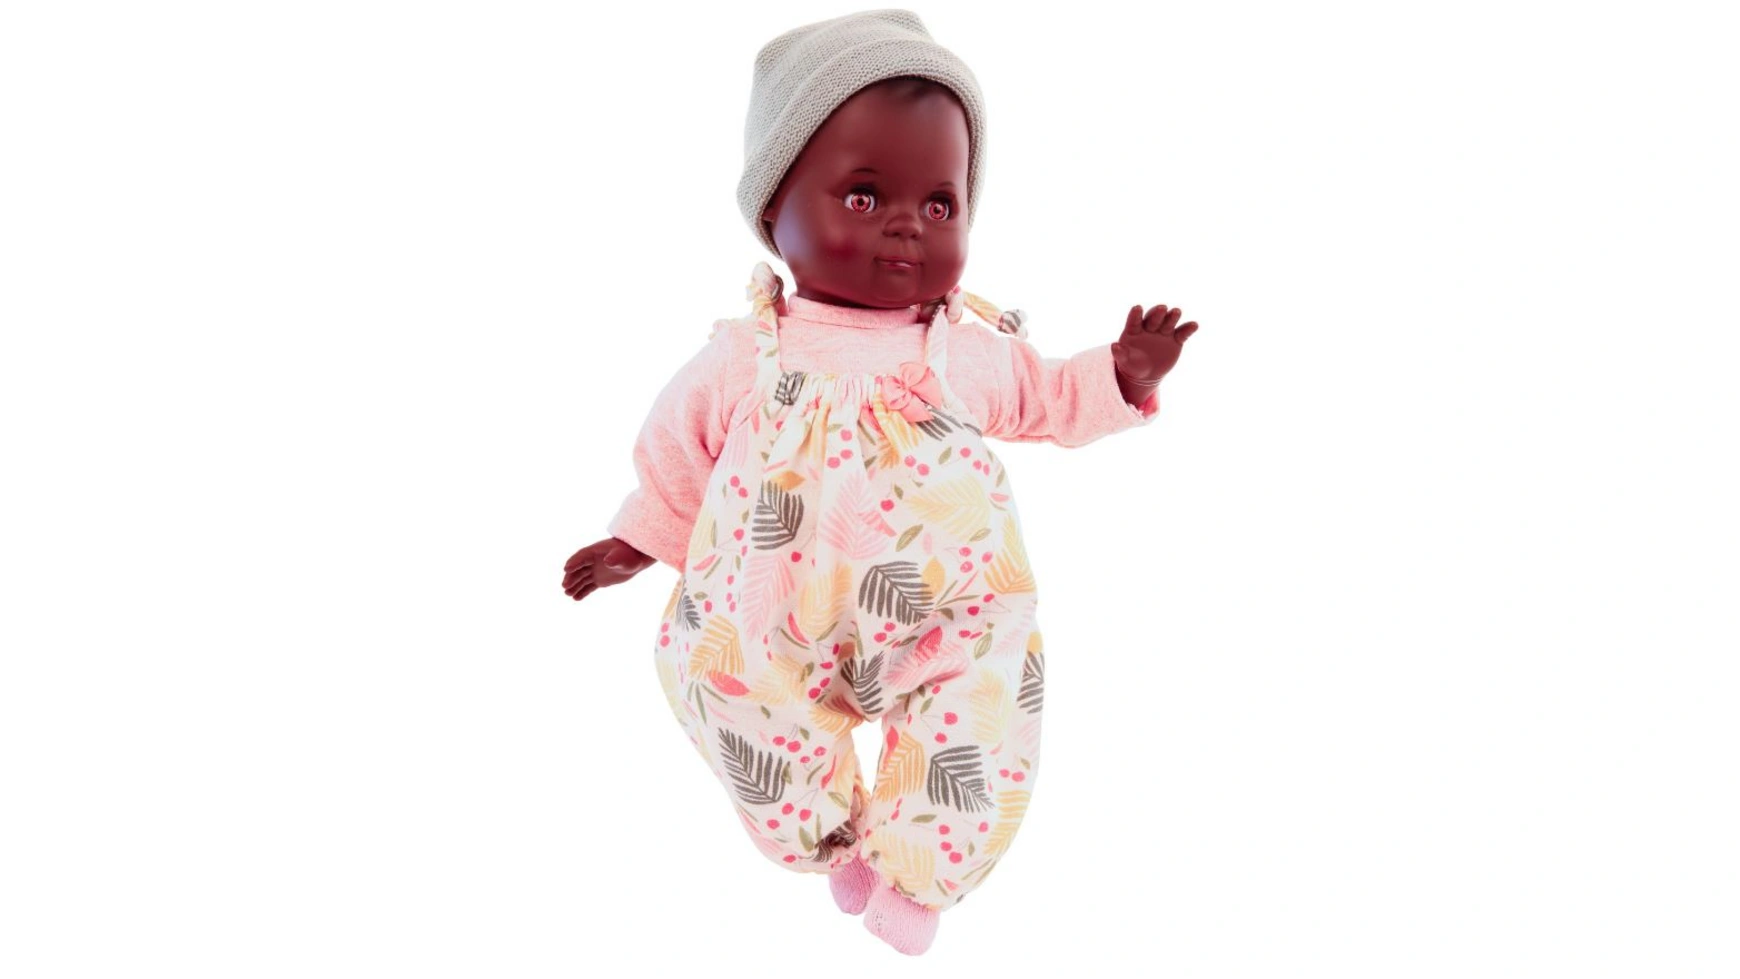 Schildkroet-Puppen Кукла Шлюммерле 32 см с окрашенными волосами и карими спящими глазами, одежда розовая/мятная///разноцветная